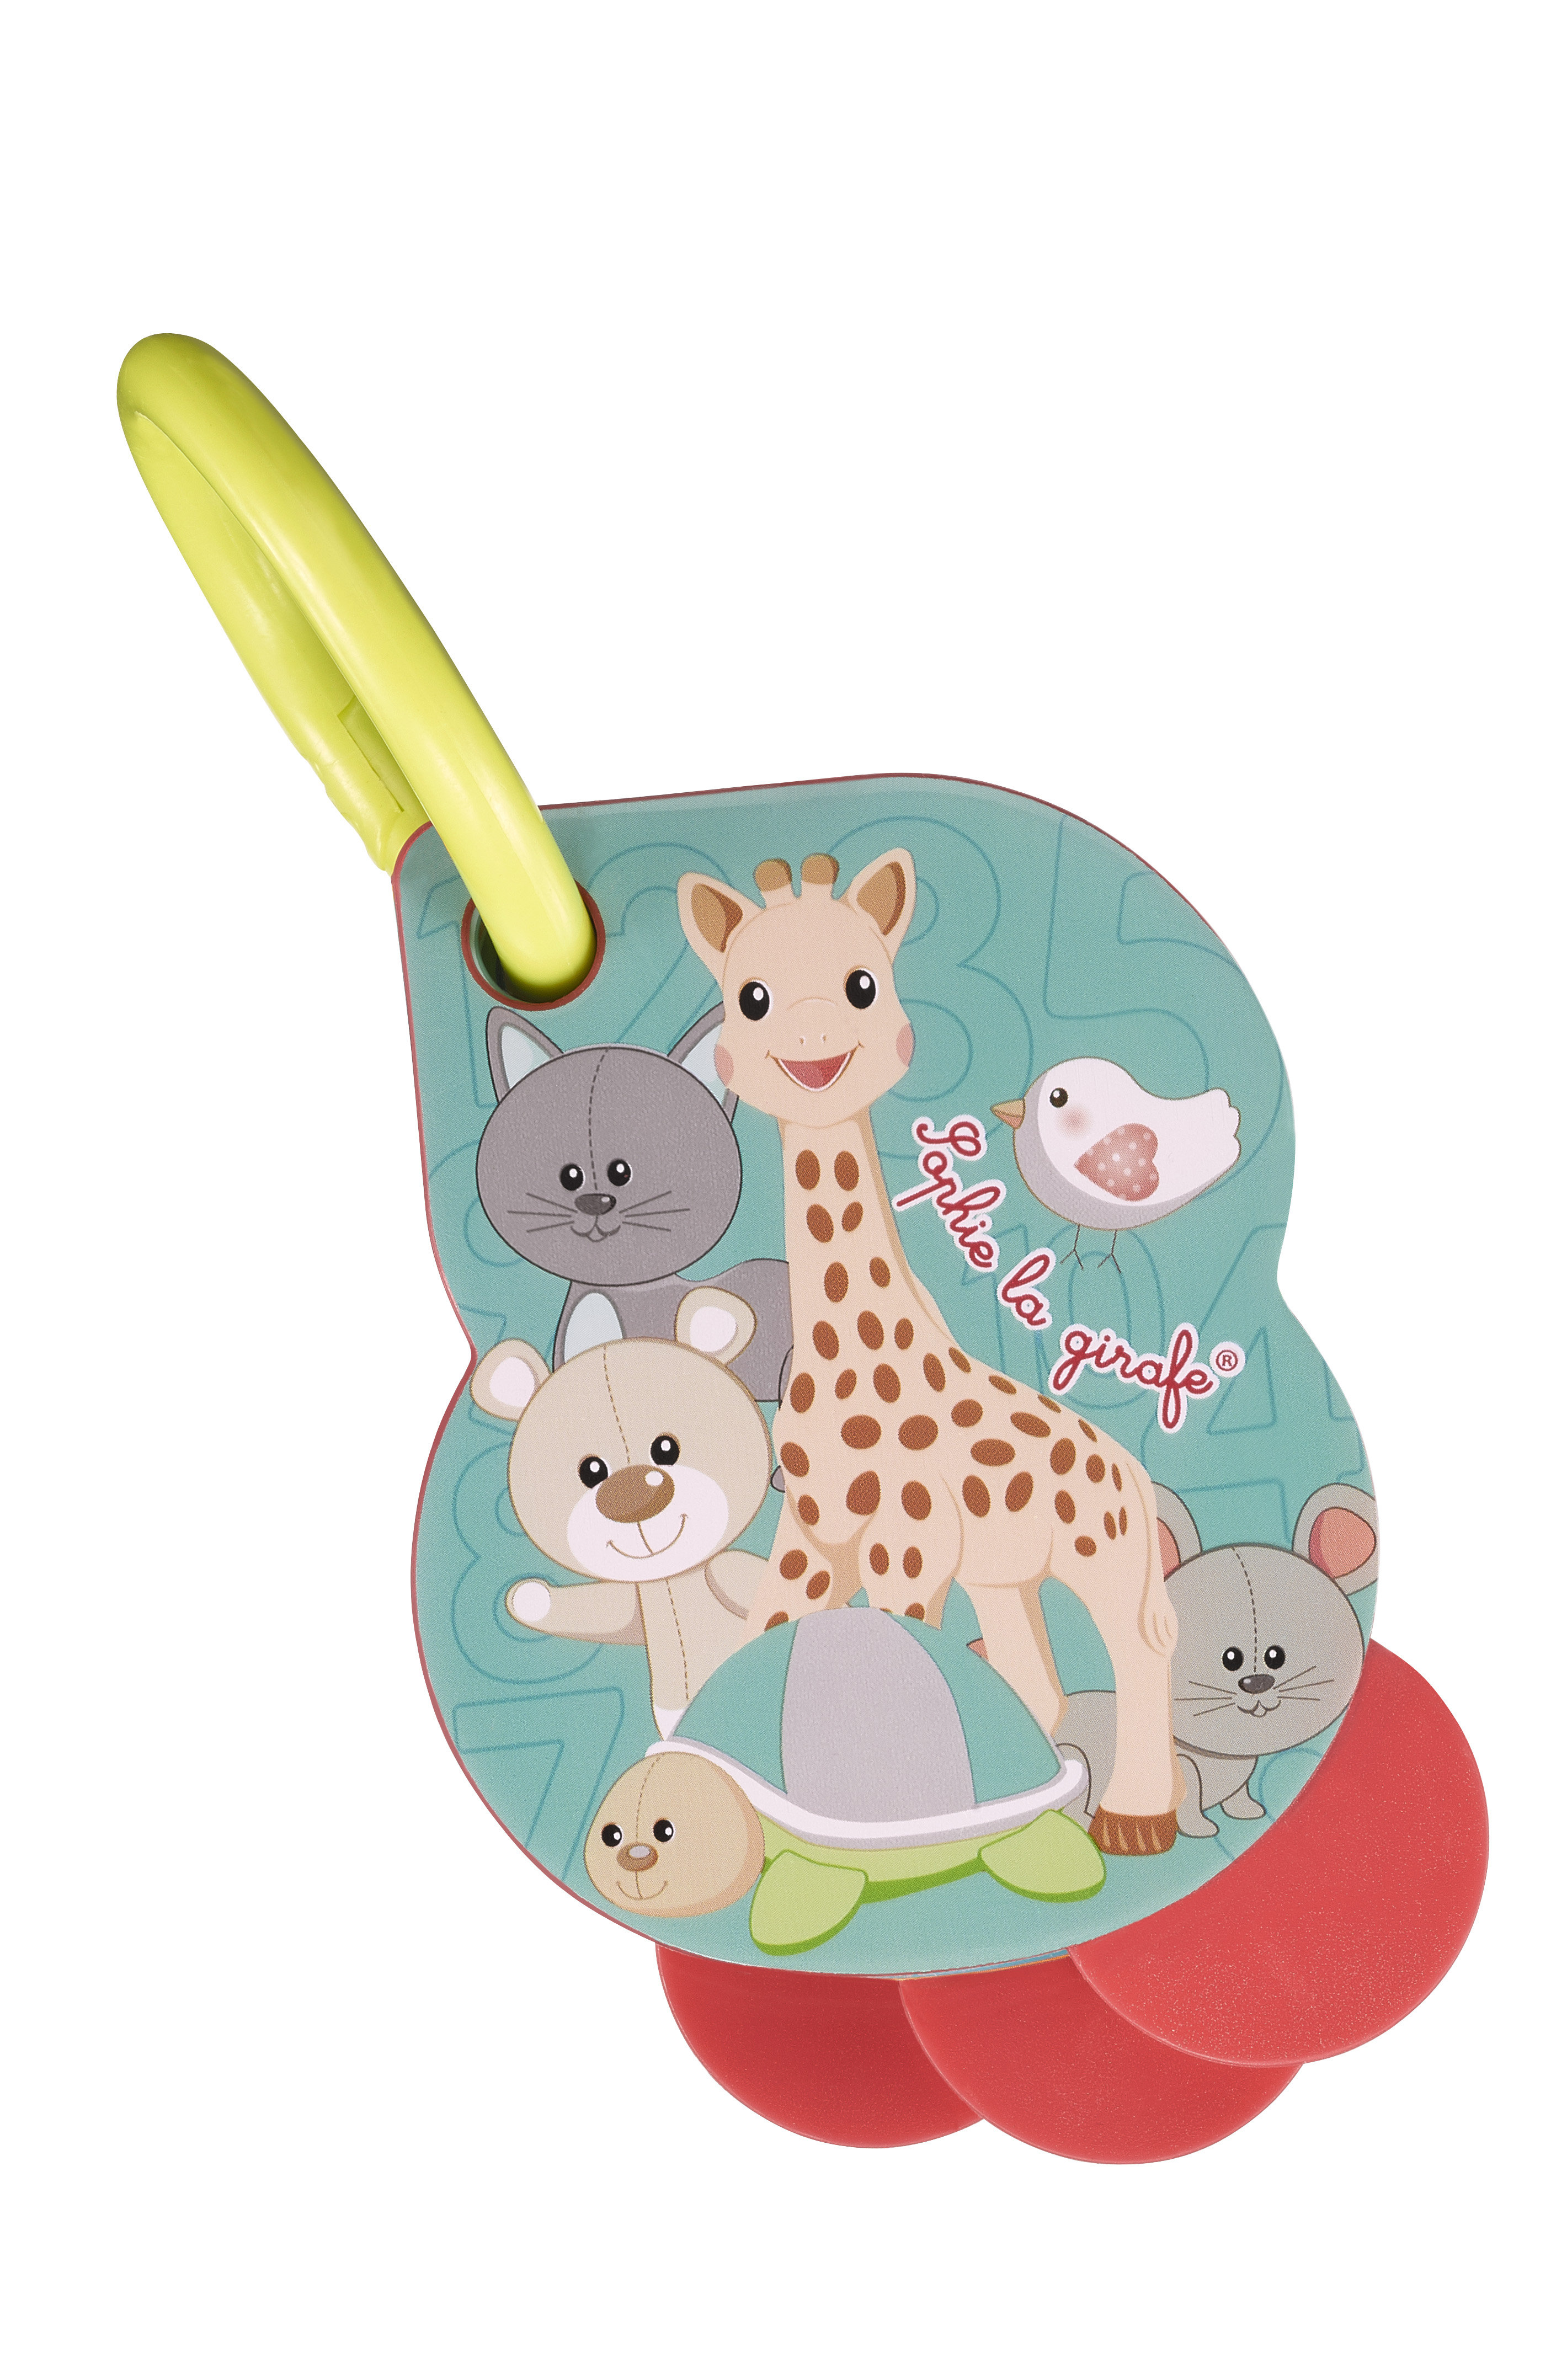 キリンのソフィー/Sophie la girafeの【BABY】1.2.3 フラッシュカード(マルチ/#3056562307948)